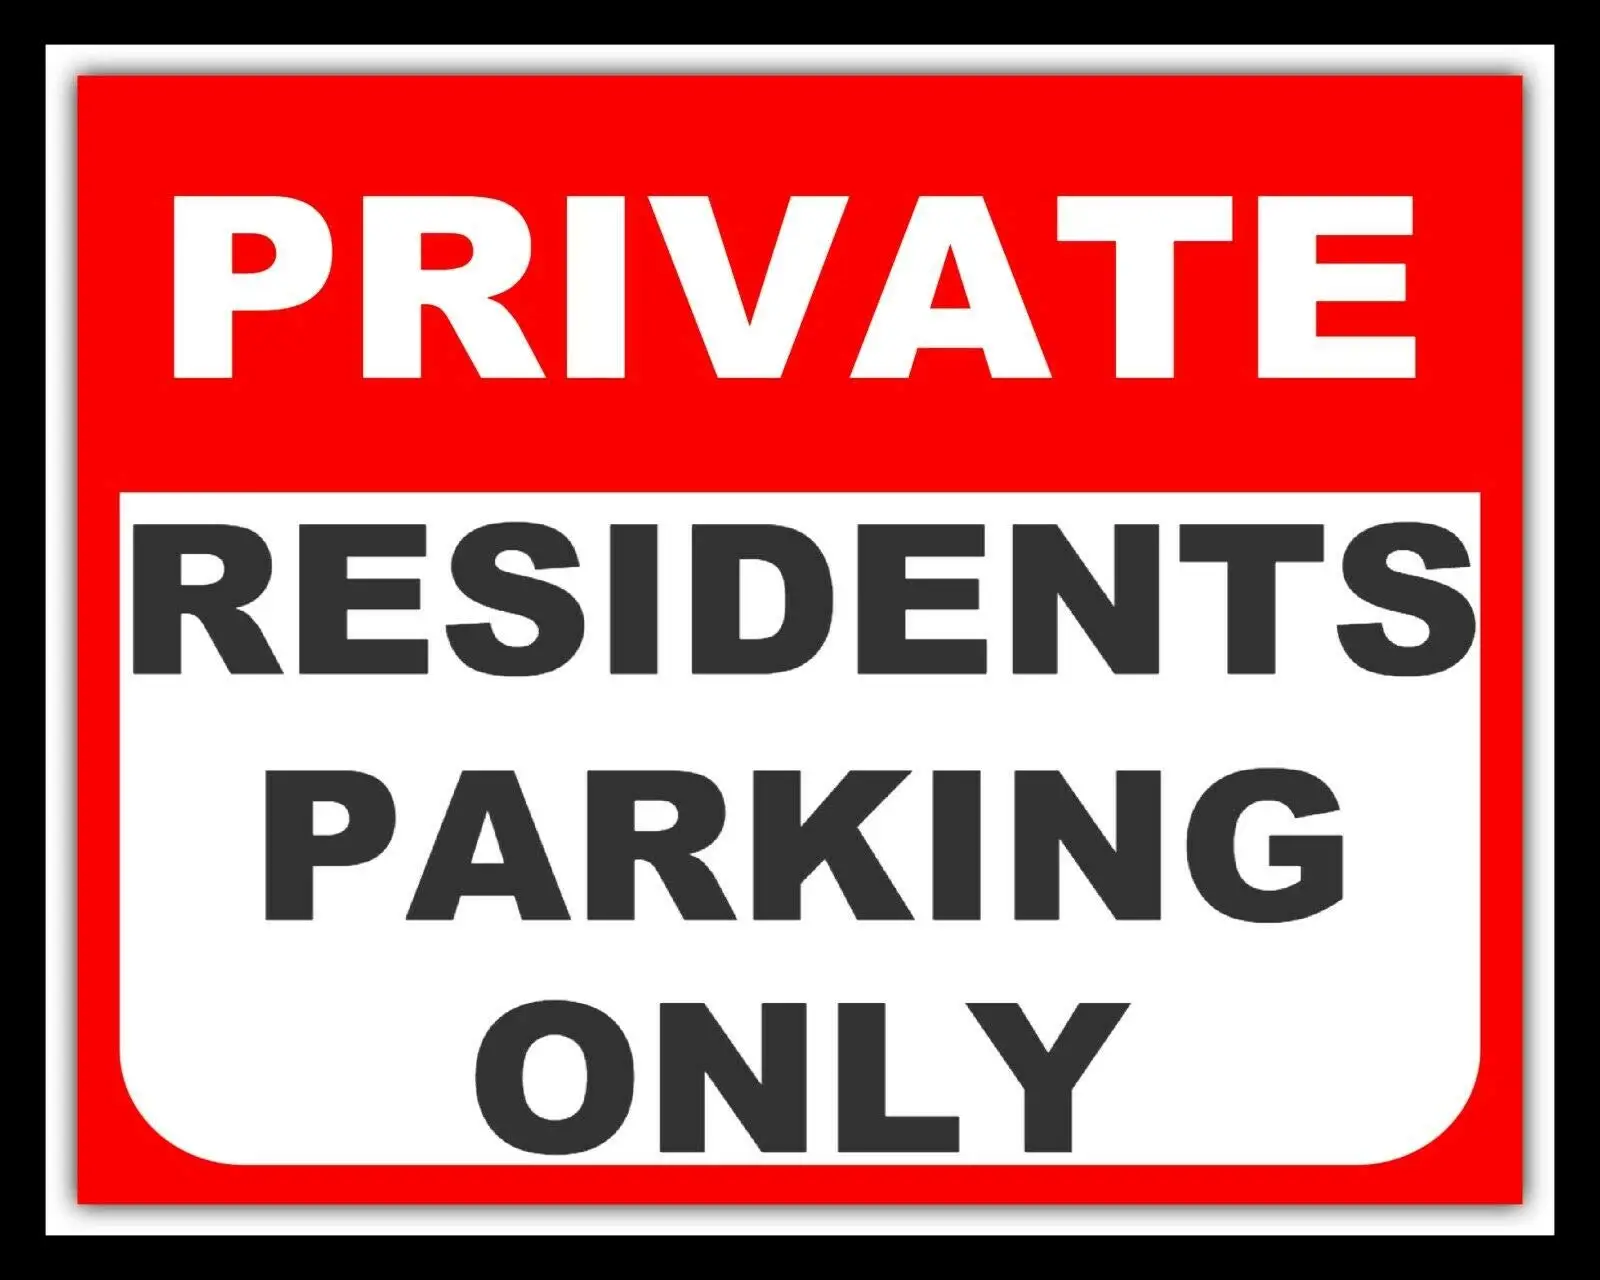 

Новые частные жители, парковочная парковка, только автопарк, метал, жестяной знак, другие указанные наружные уличные дворные знаки